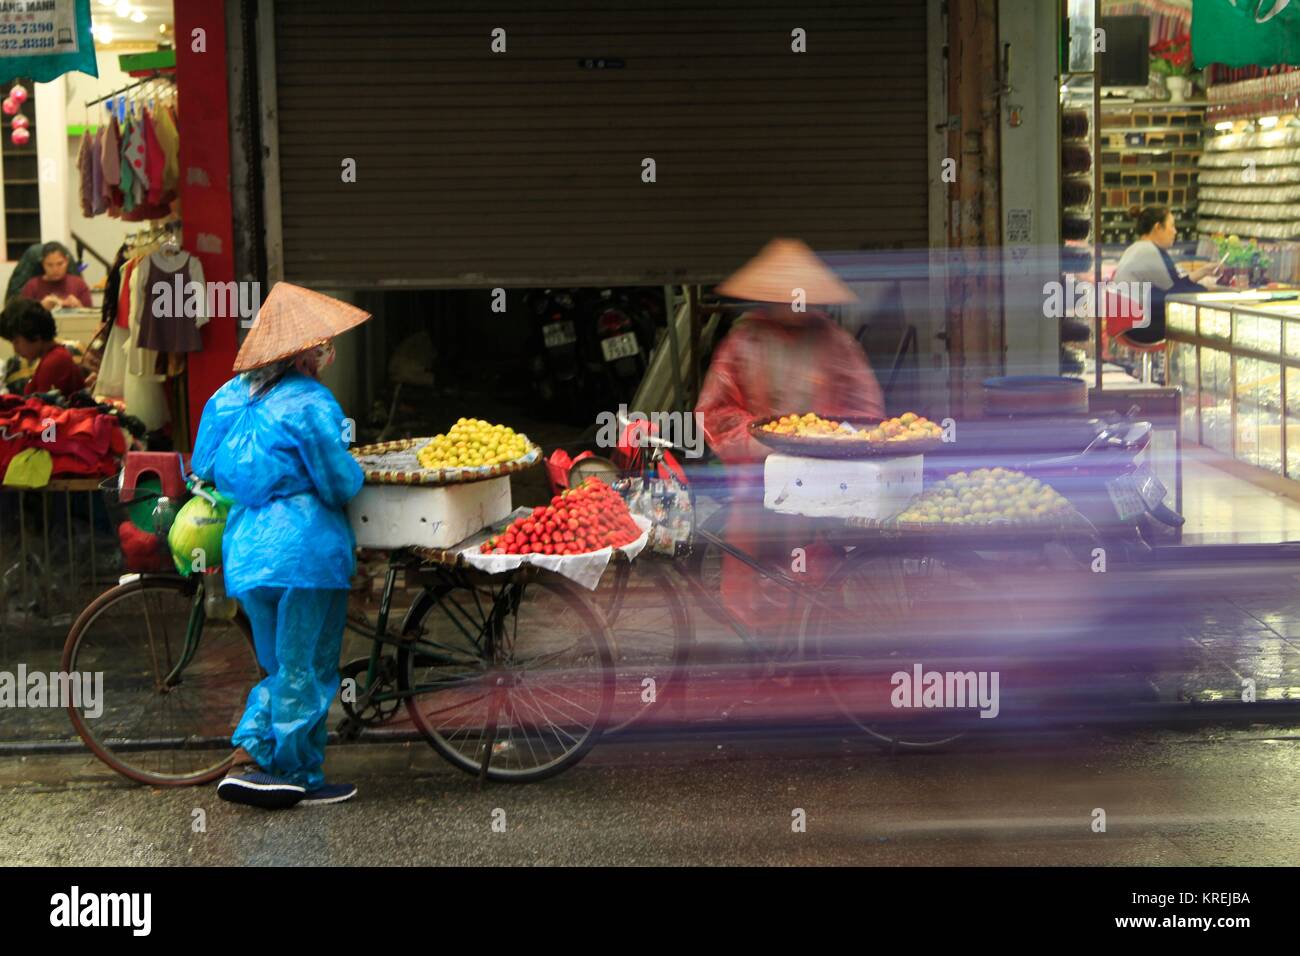 Motorrad blur Verdecken bike Obst Verkäufer in Regen ponchos diskutieren Strategie auf einen feuchten Tag in den Straßen von Hanoi, Vietnam Stockfoto